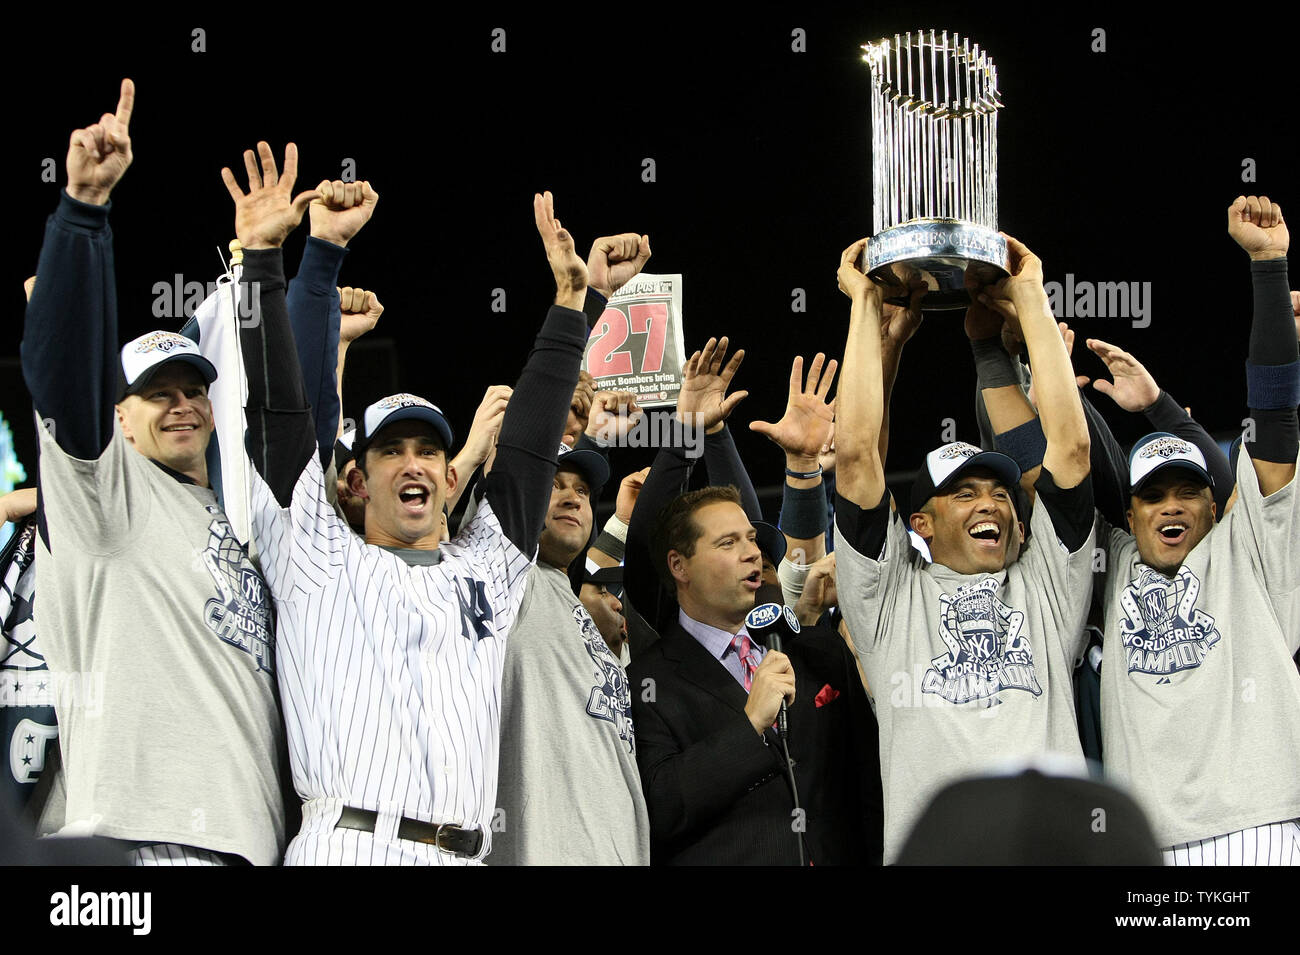 New York Yankees celebrate winning the 2009 World Series at Yankee